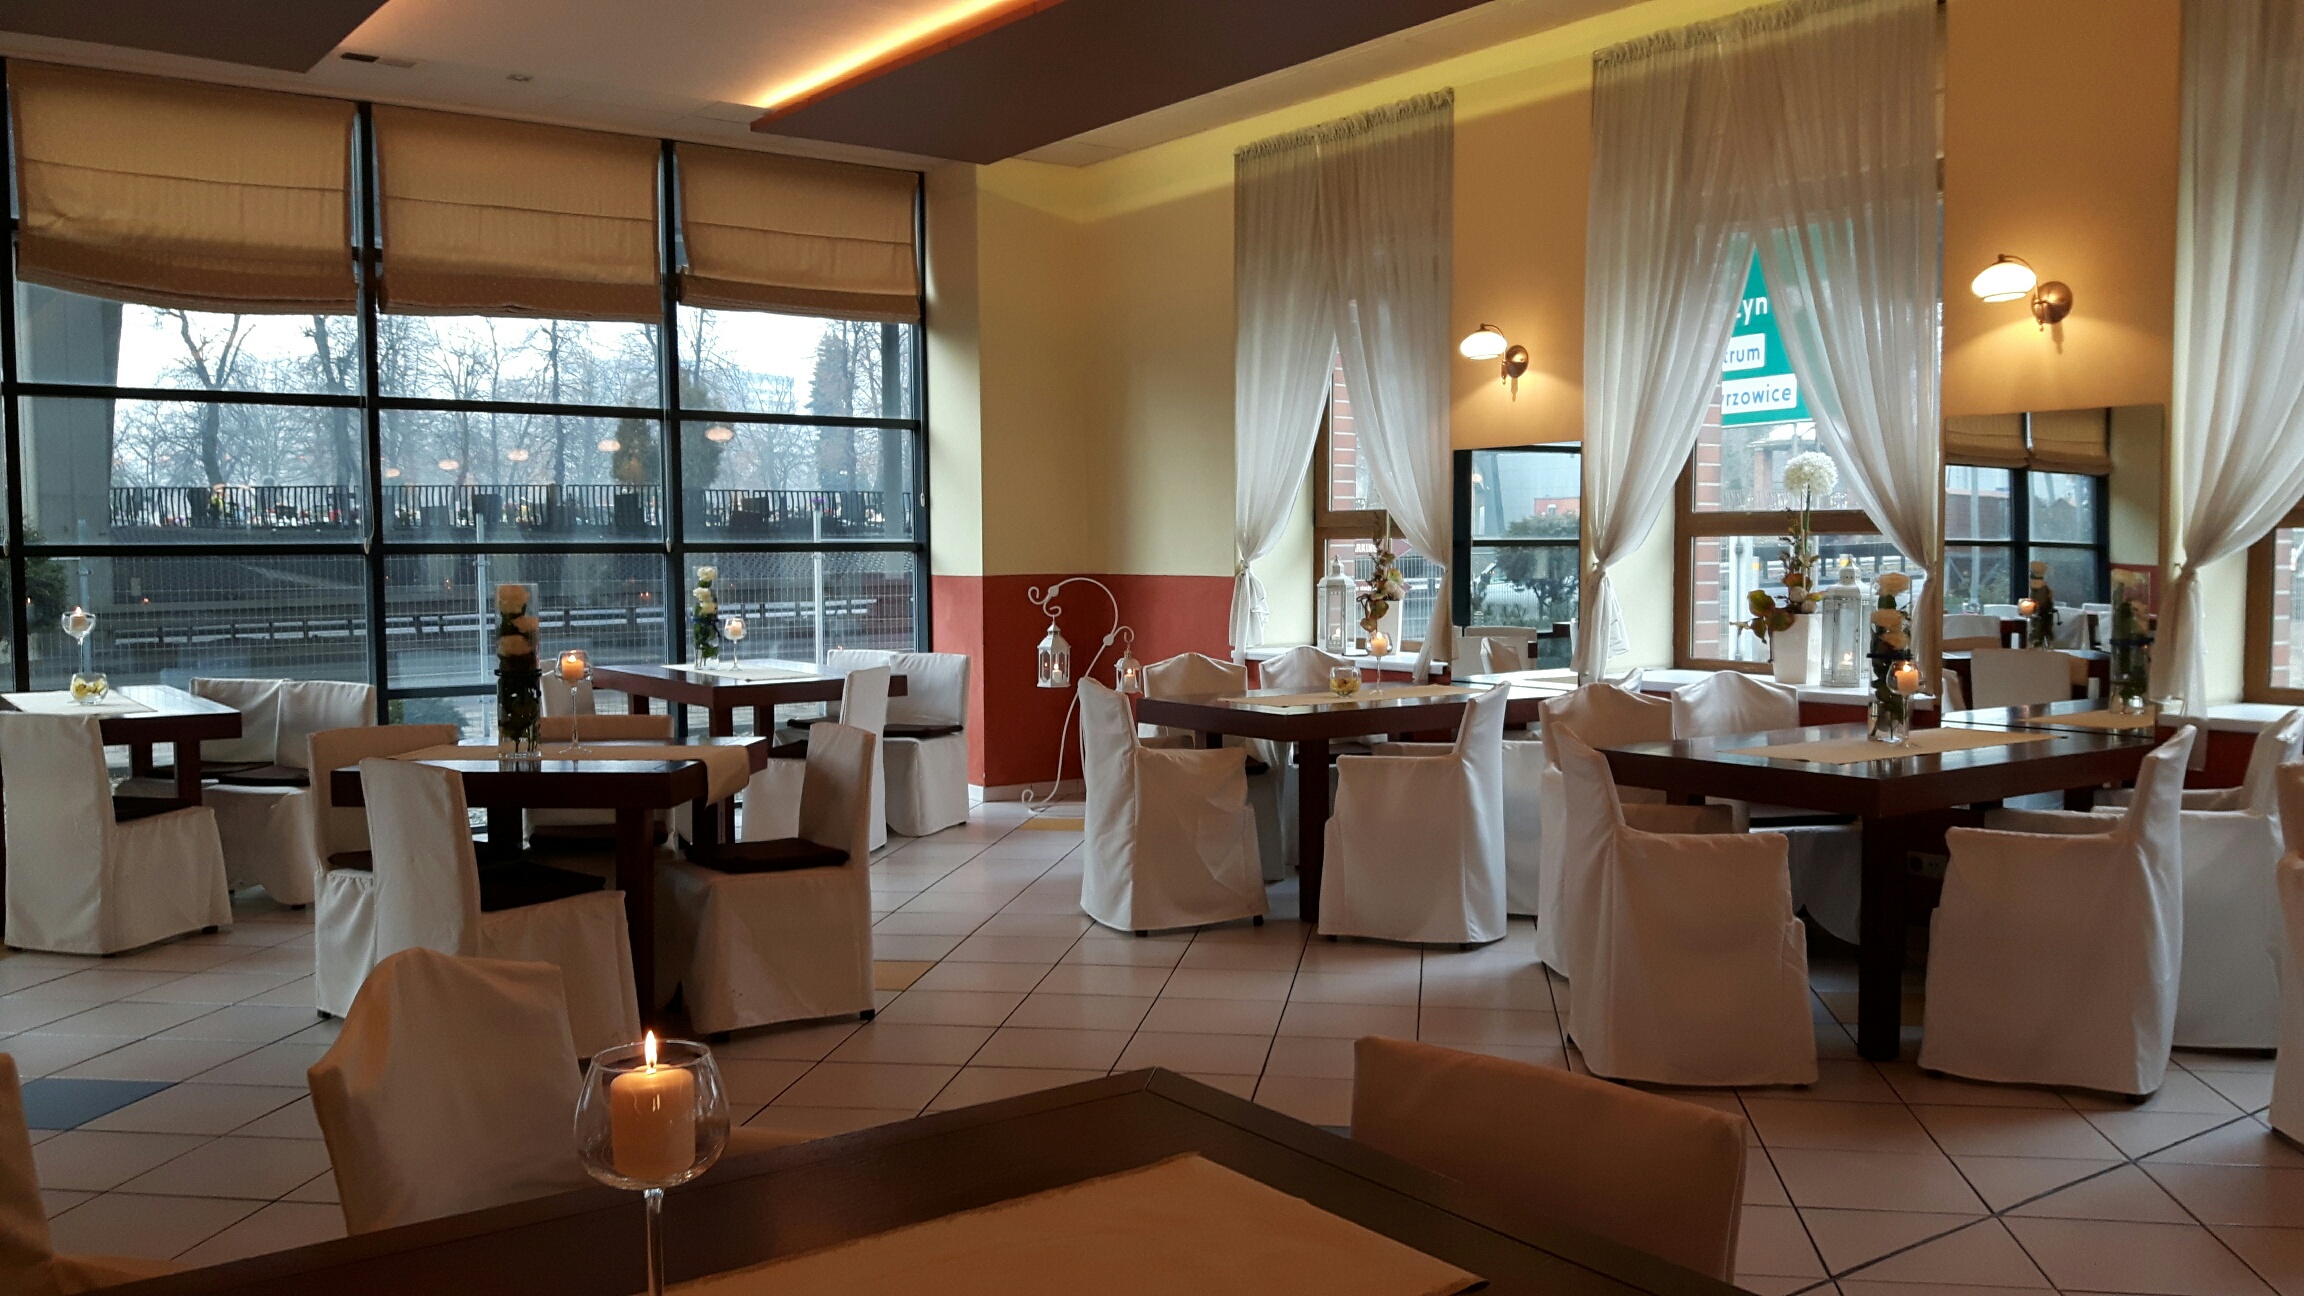 Dobra restauracja w Katowicach, tani catering dla firm, wesele, imprezy okoliczno艣ciowe, sale szkoleniowe, bankiety, 艢l膮sk